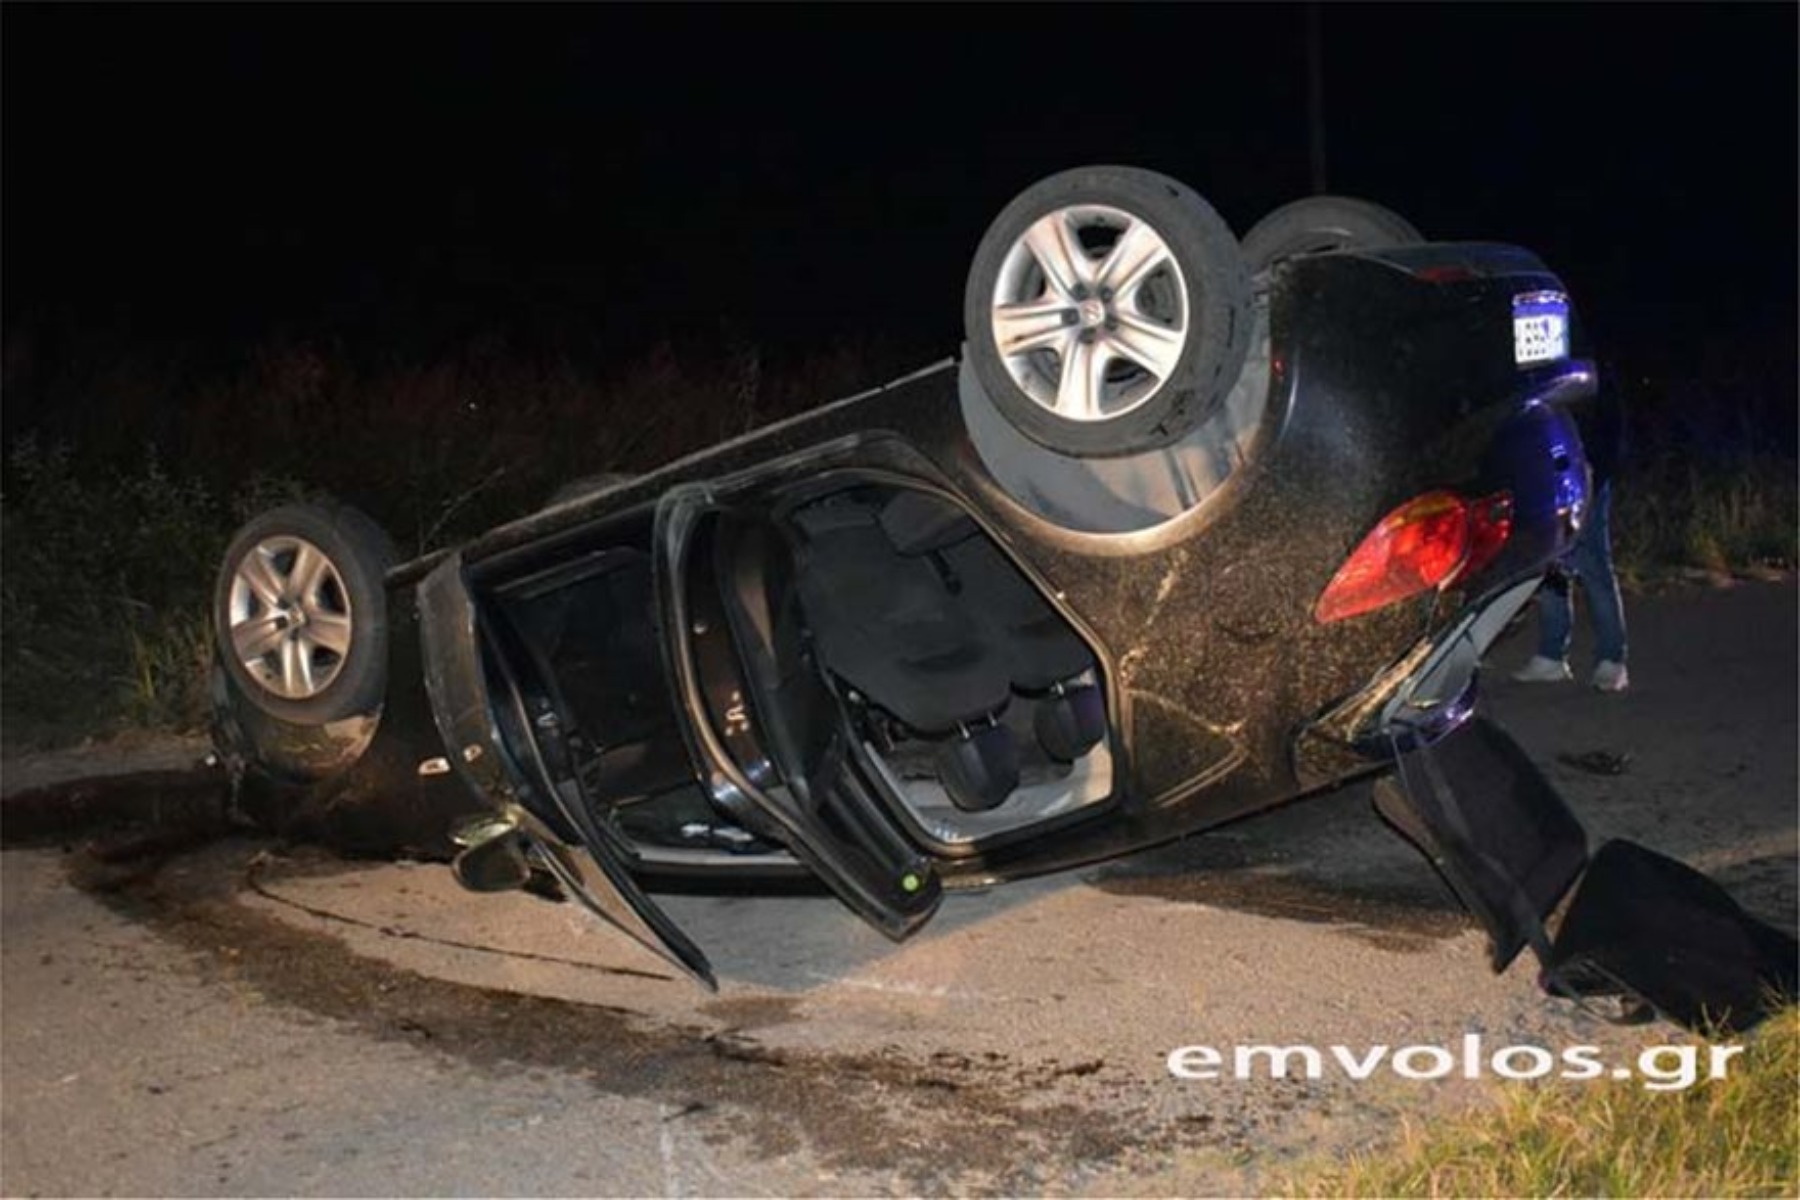 Τροχαίο δυστύχημα με θύμα 32χρονο στην Ημαθία (βίντεο)